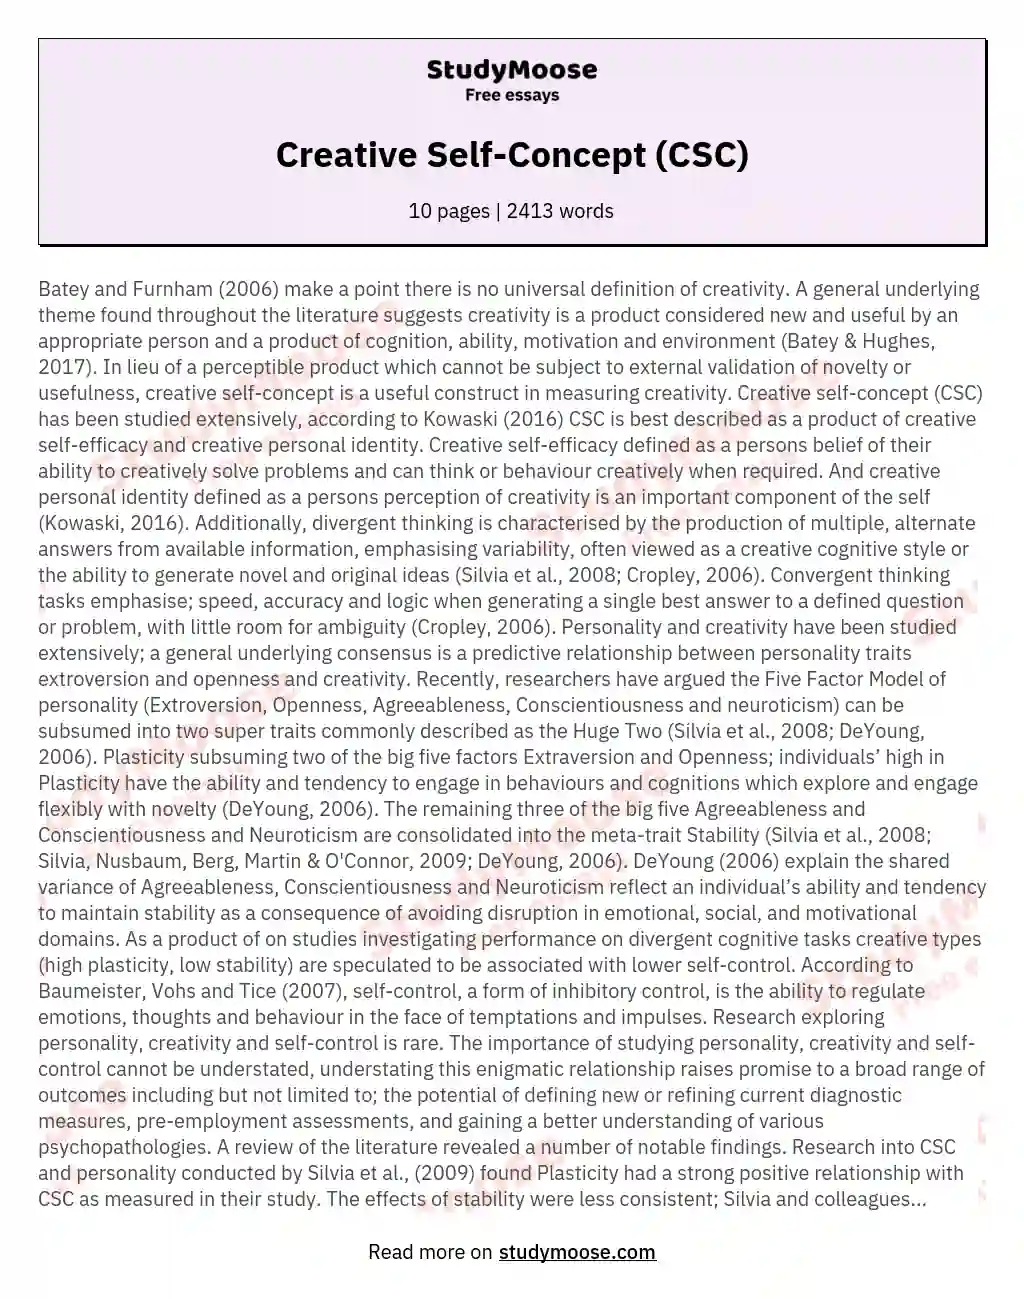 Creative Self-Concept (CSC) essay